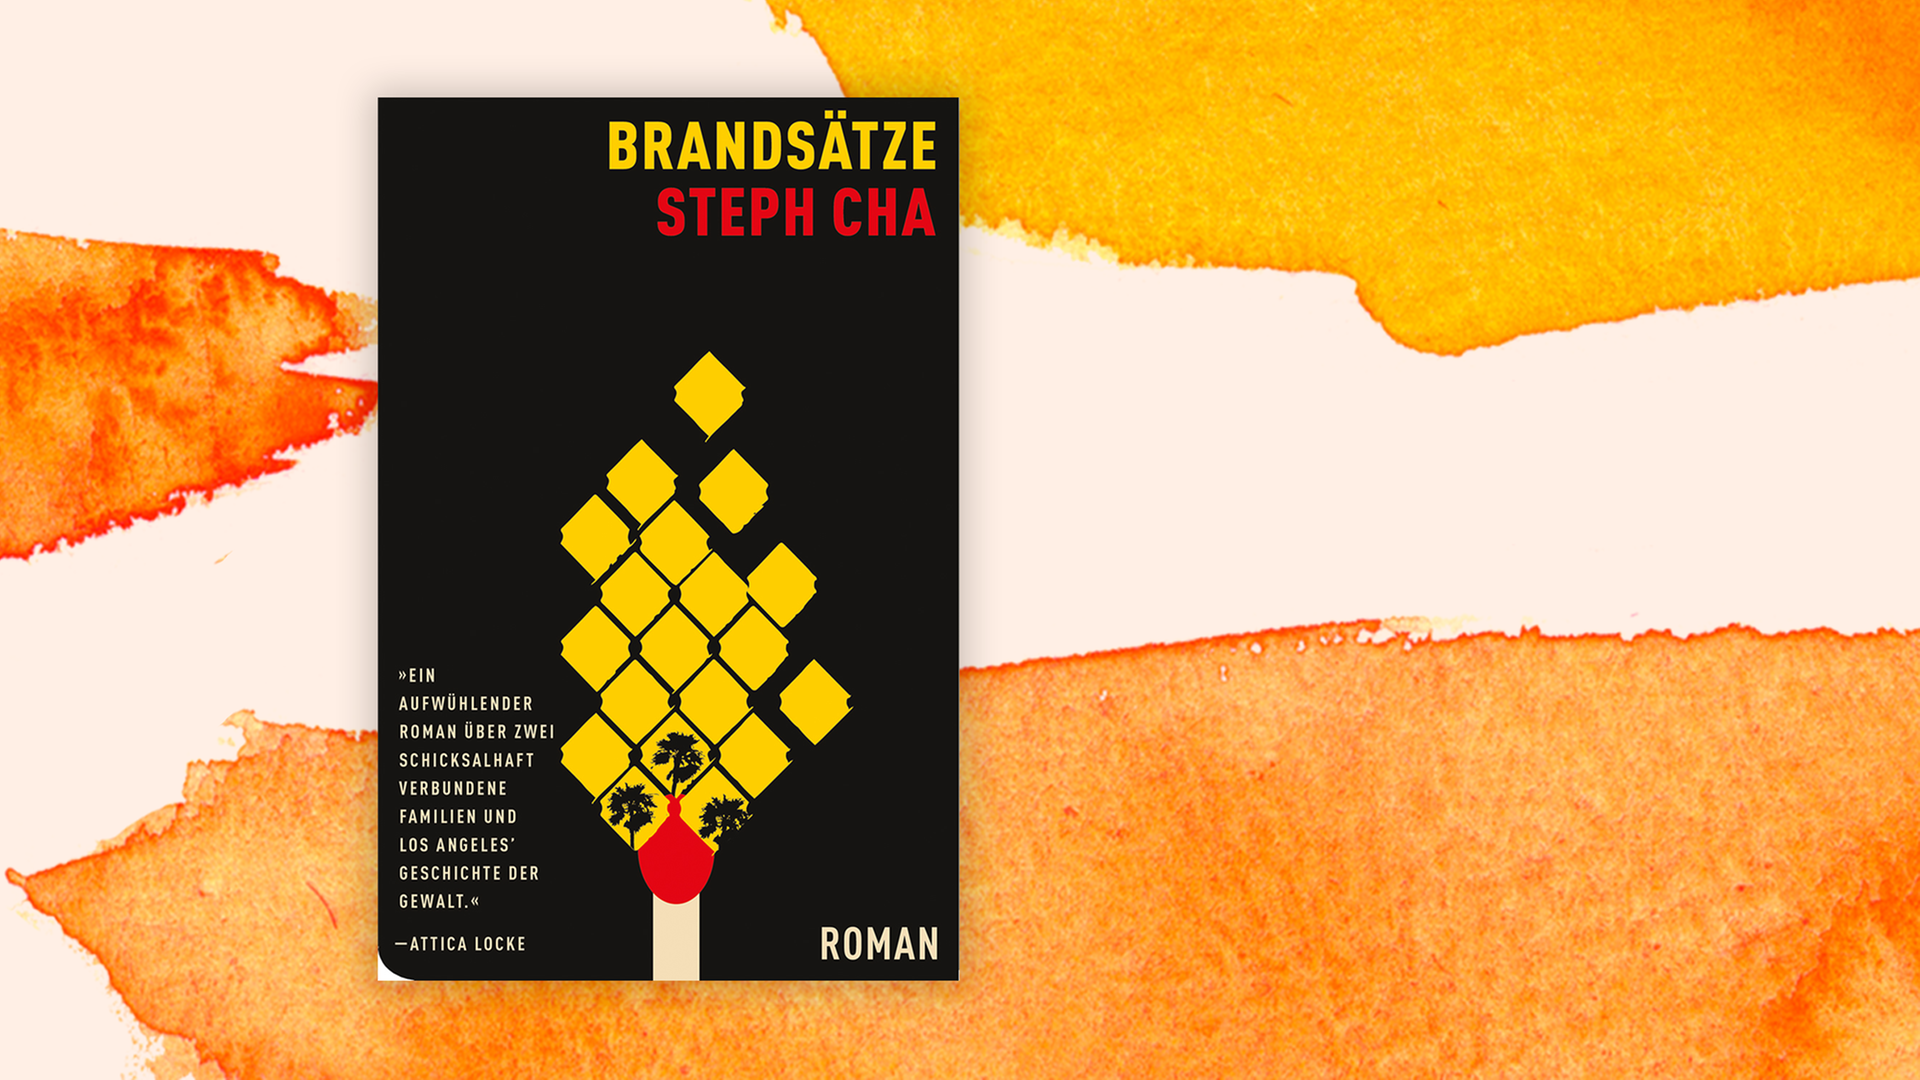 Zu sehen ist der Titel des Kriminalromans "Brandsätze" von Steph Cha.